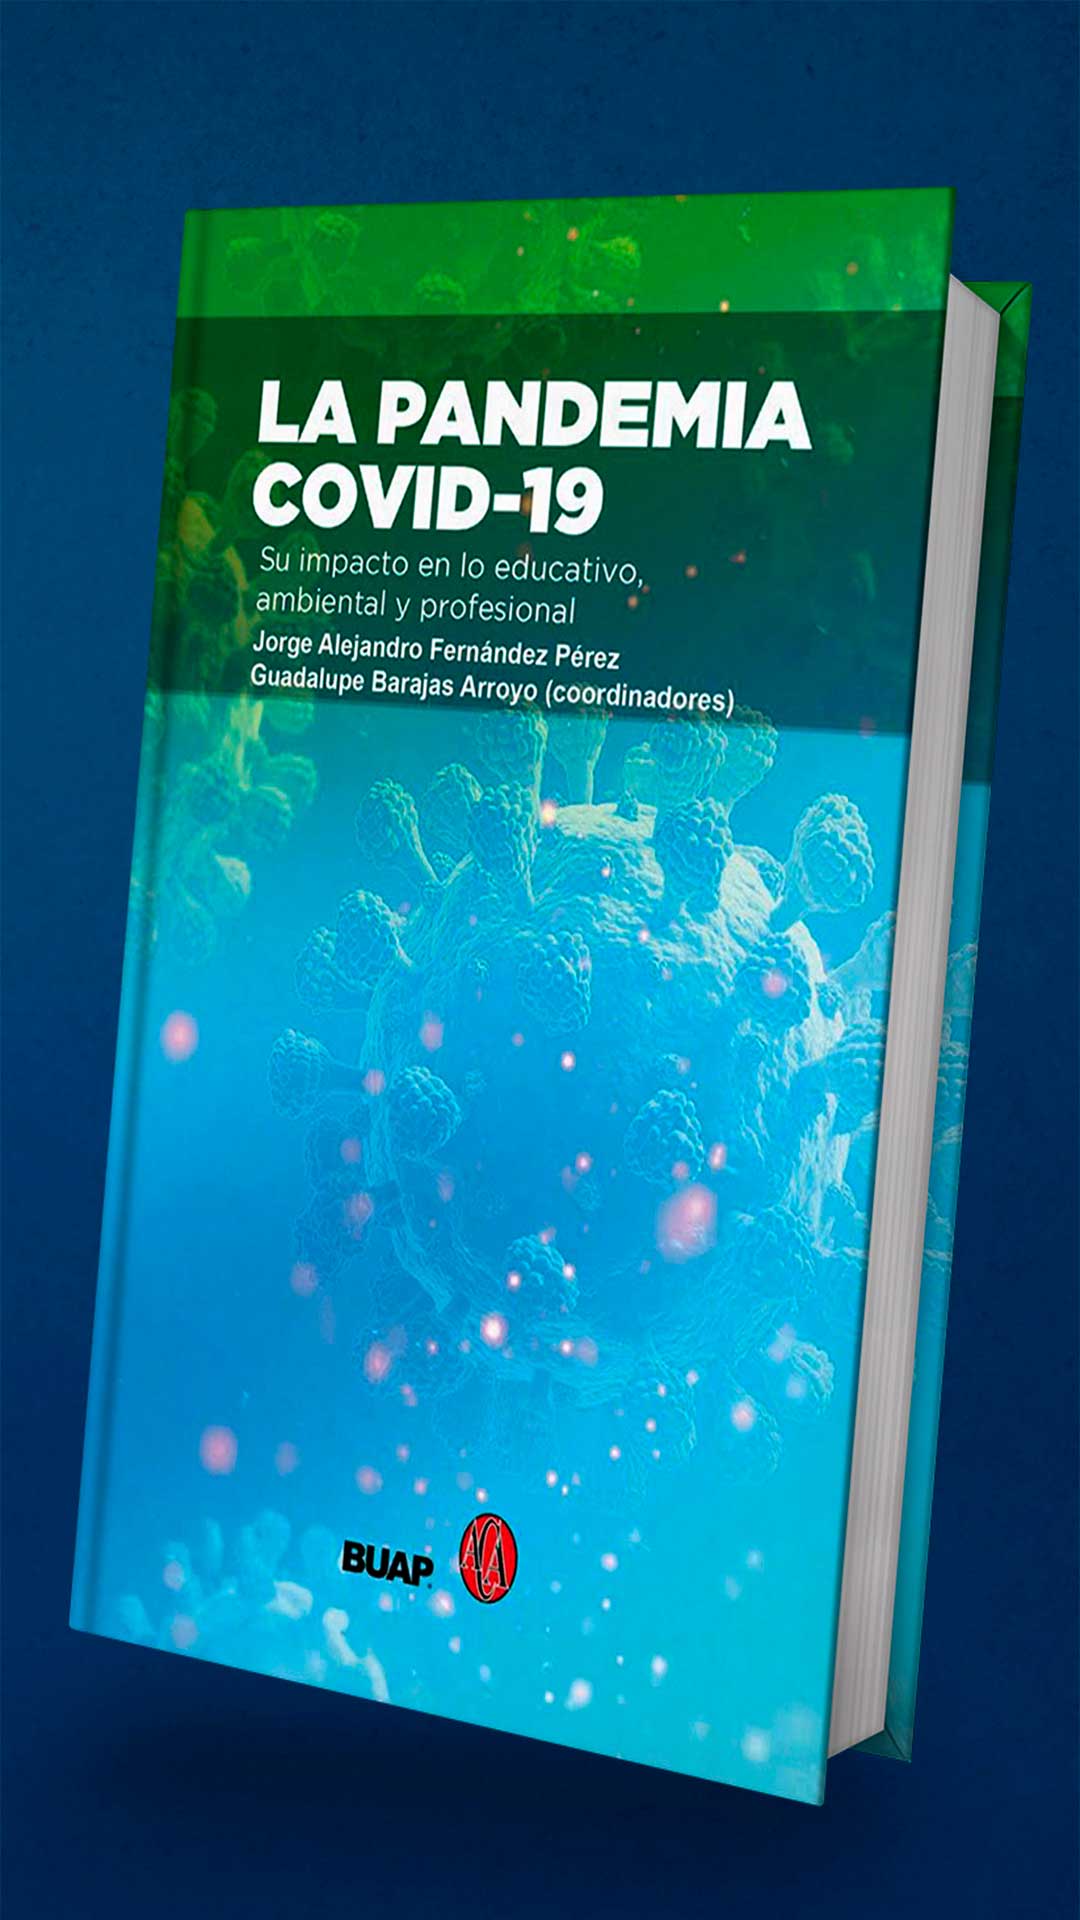 Se presentó el libro "La pandemia COVID-19. Su impacto en lo educativo, ambiental y profesional"